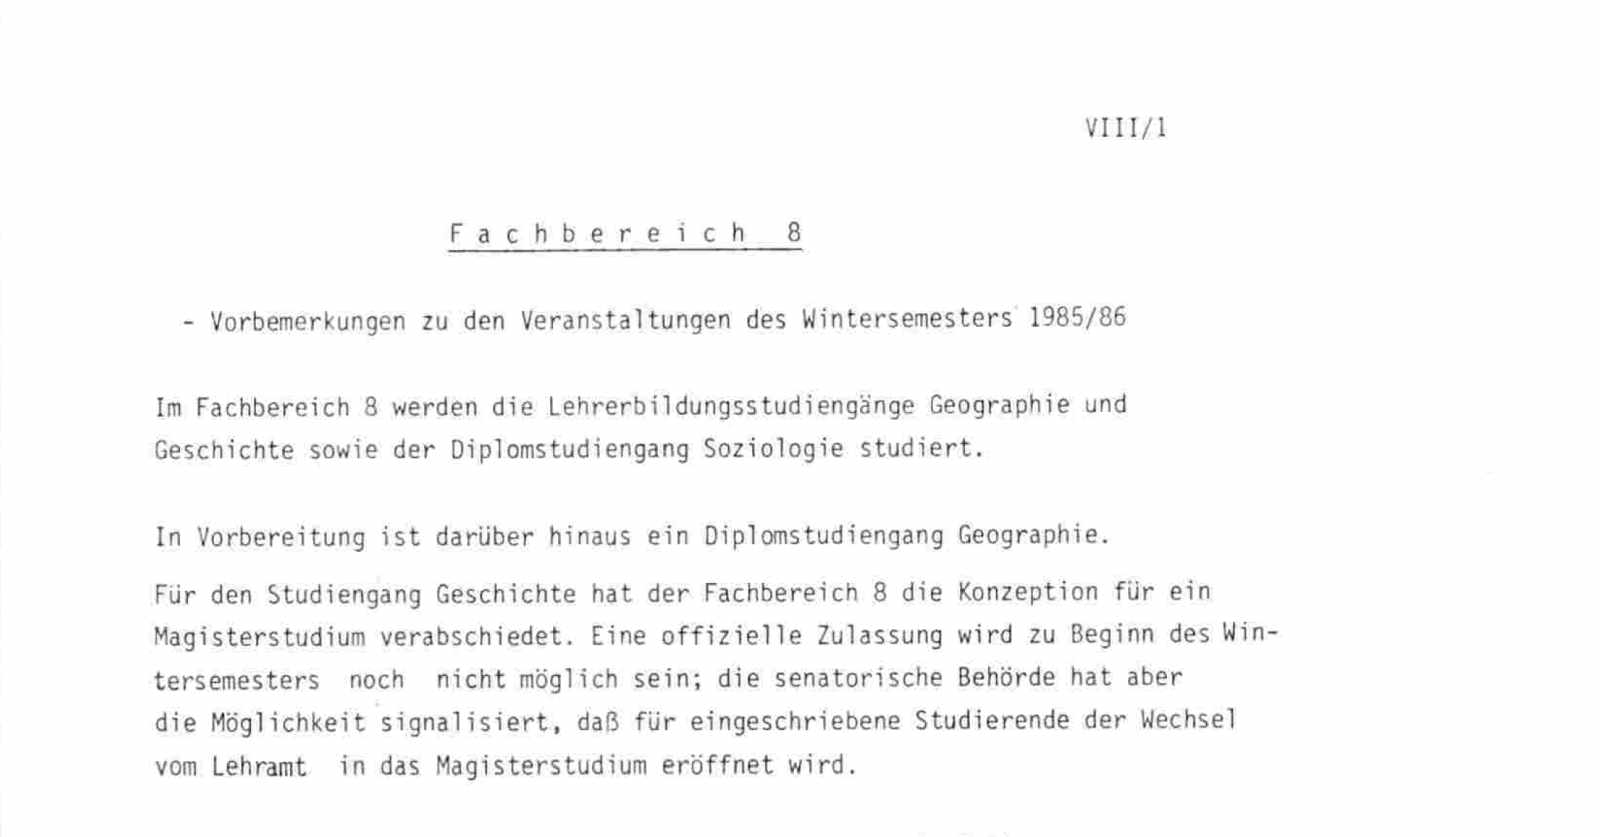 Textauszug aus dem Vorlesungsverzeichnis im Wintersemester 1985/86. Der Fachbereich 8 listet sein Angebot auf.